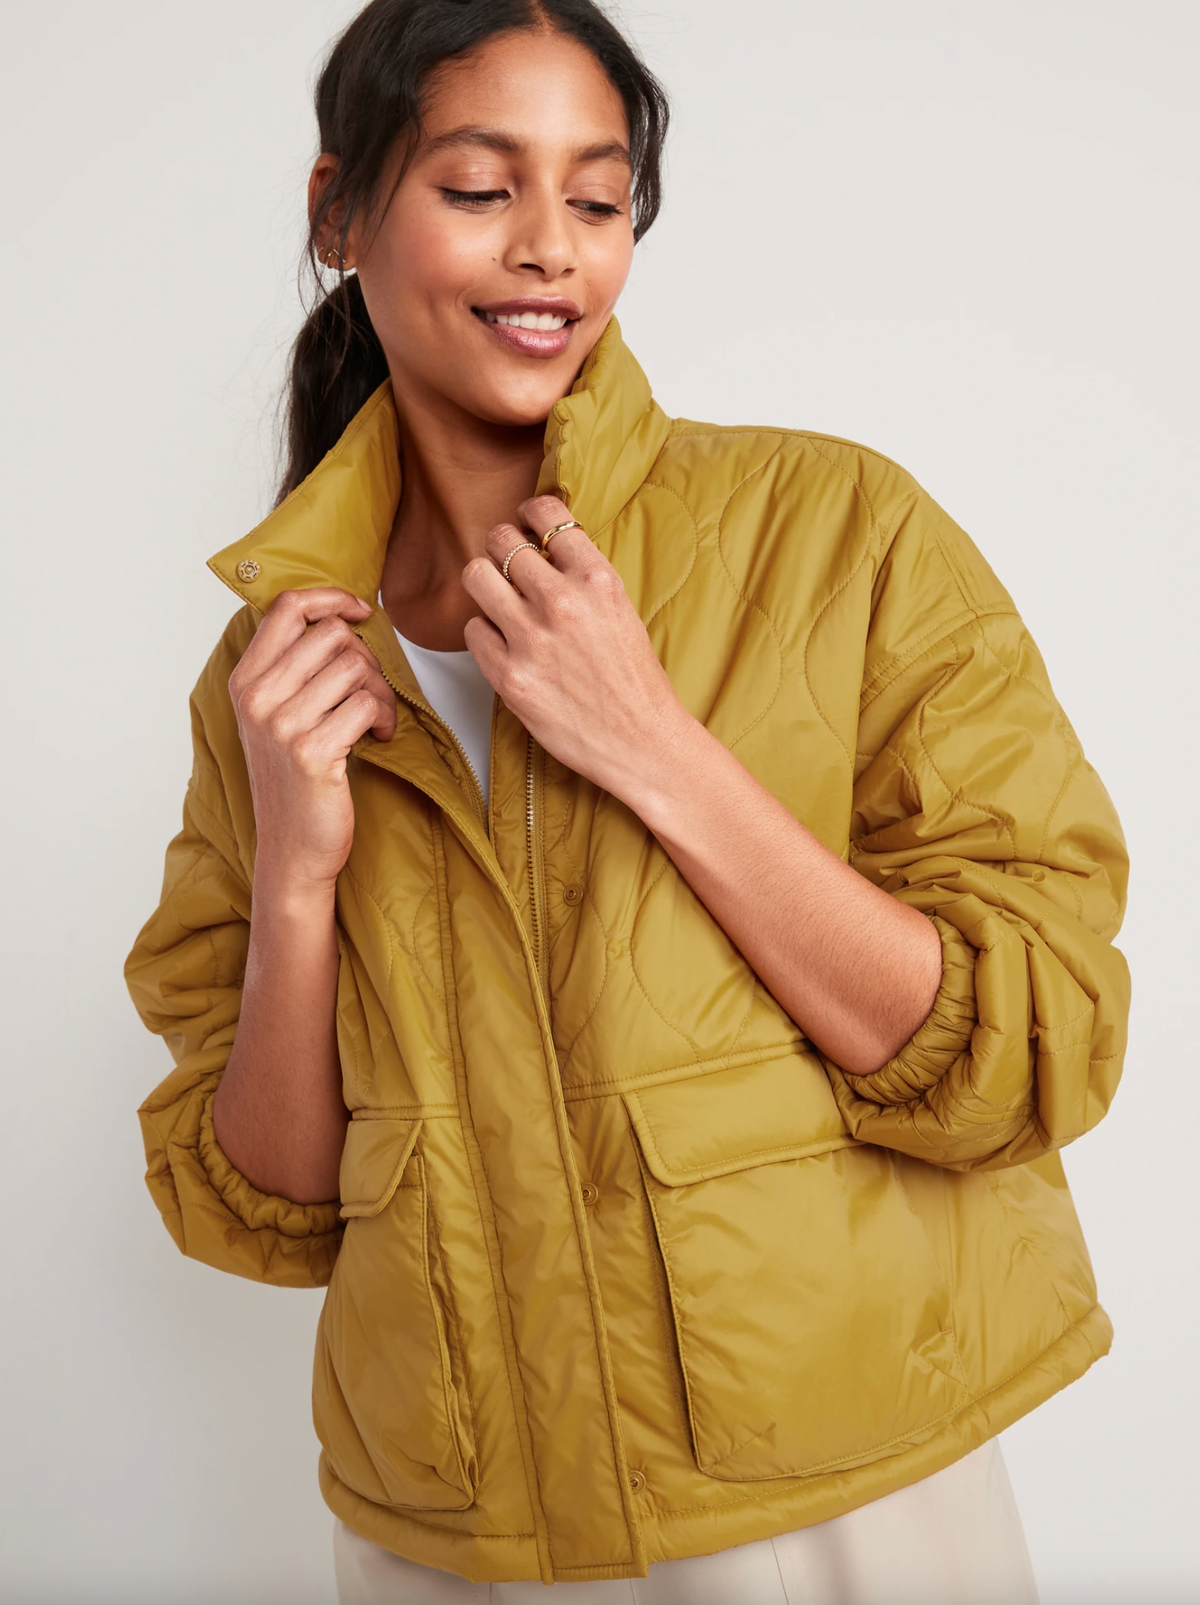 light jackets for women yellow puffer